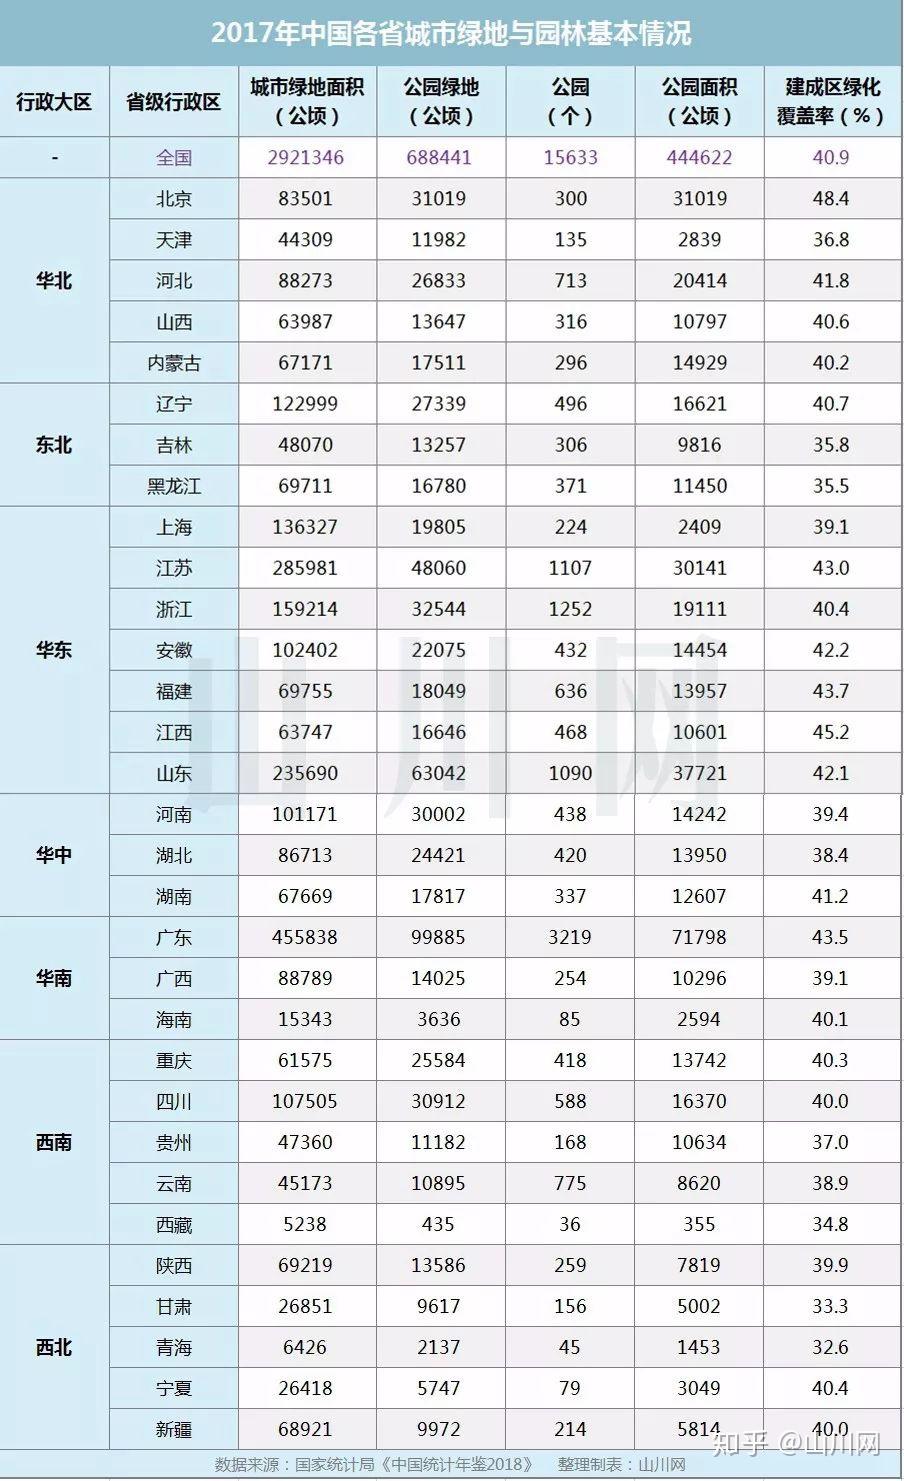 《中国统计年鉴2018》当中,曾对中国各省城市绿地面积,公园绿地(面积)